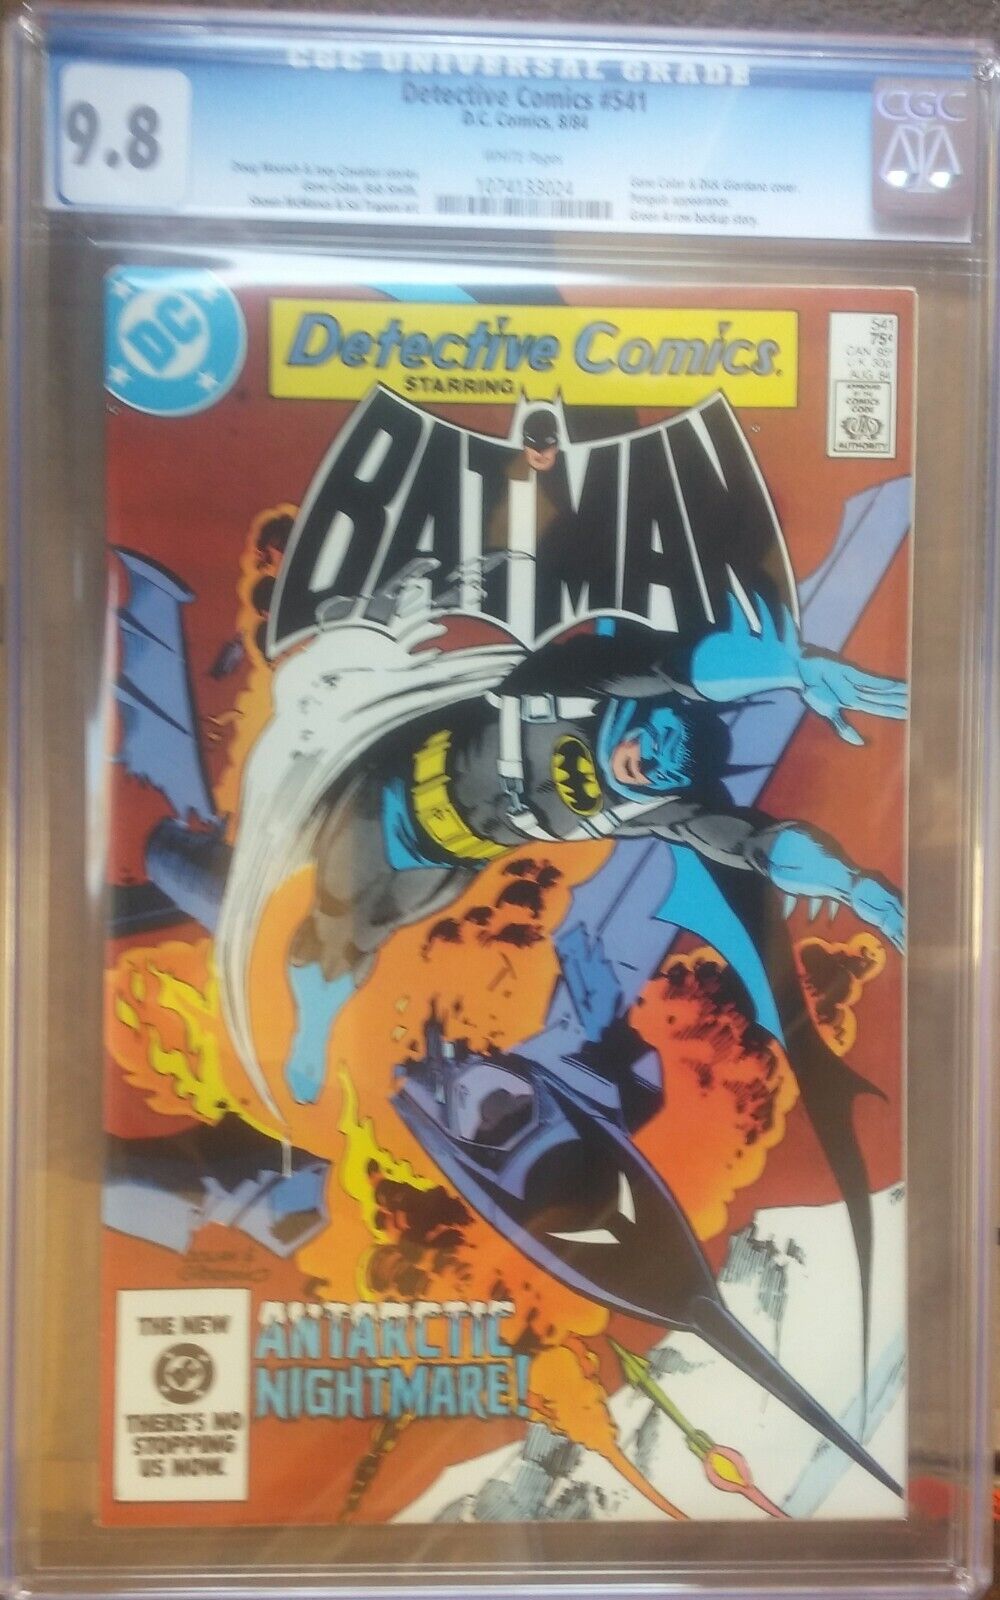 cgc 9.8 Detective Comics #541 BatPlane